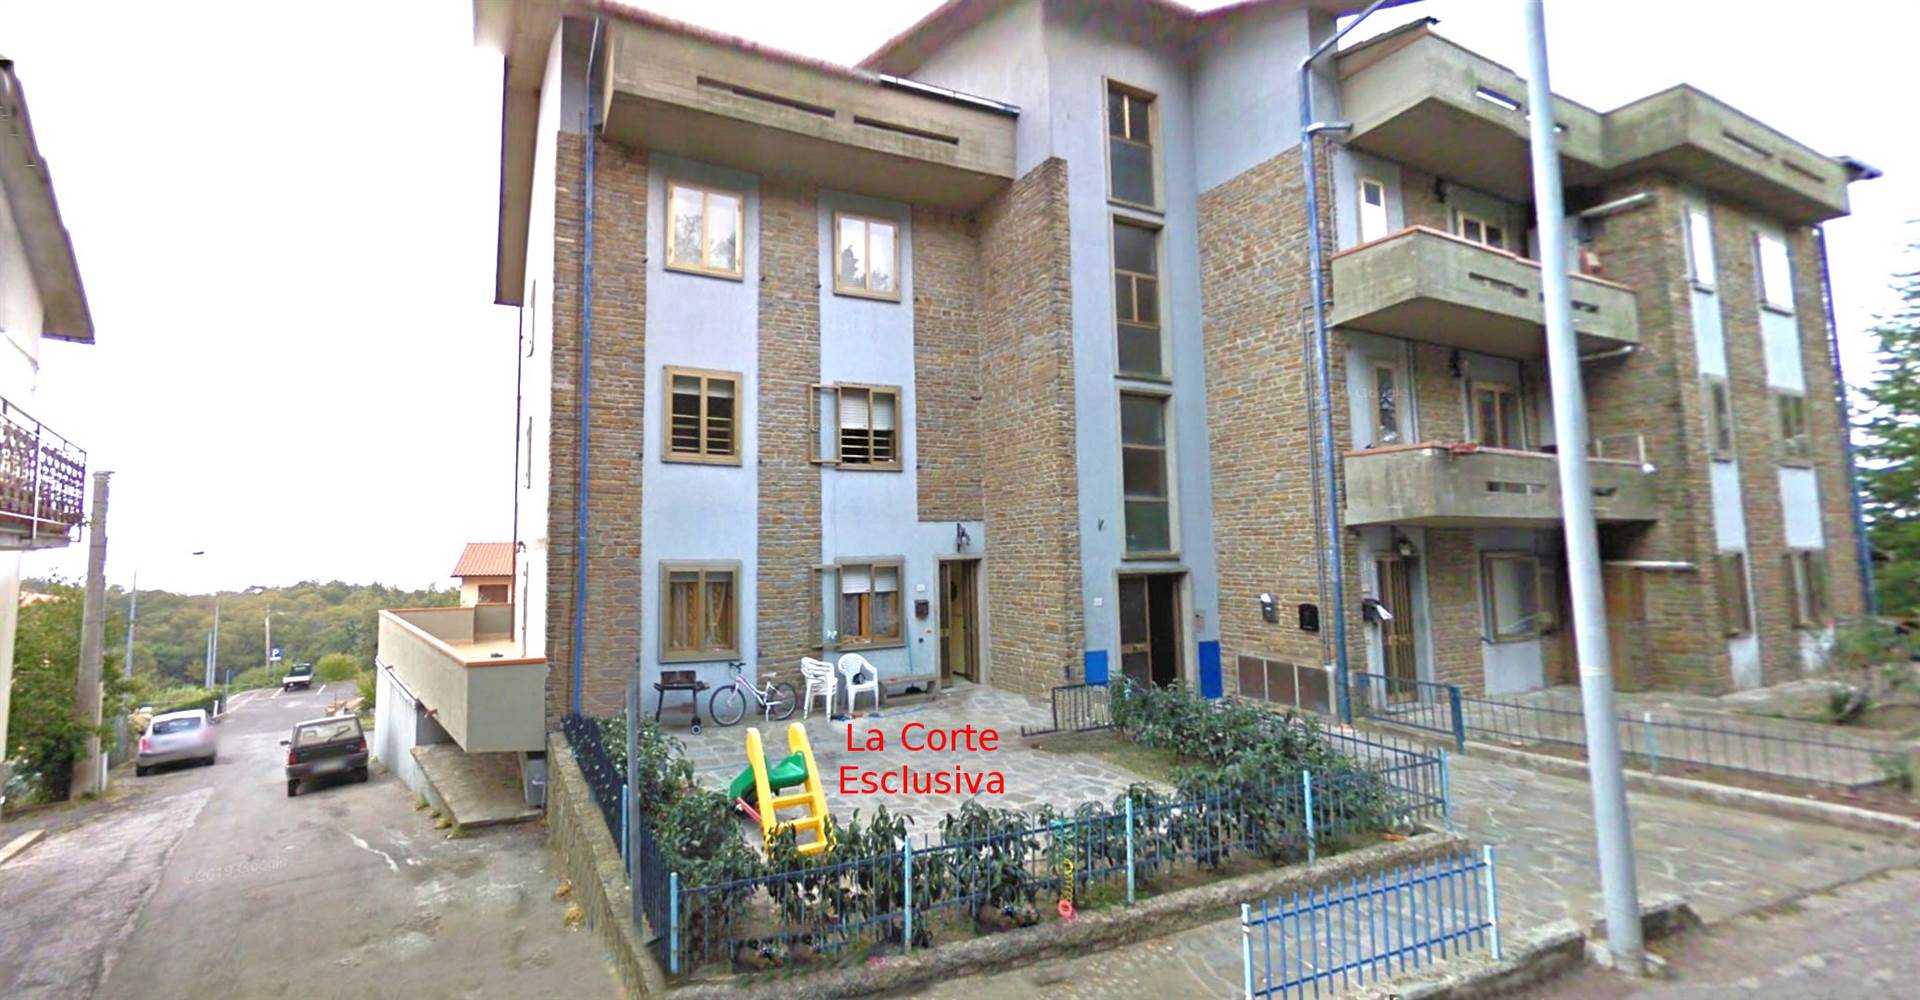 Appartamento in vendita a Roccastrada, 5 locali, zona atederighi, prezzo € 70.000 | PortaleAgenzieImmobiliari.it